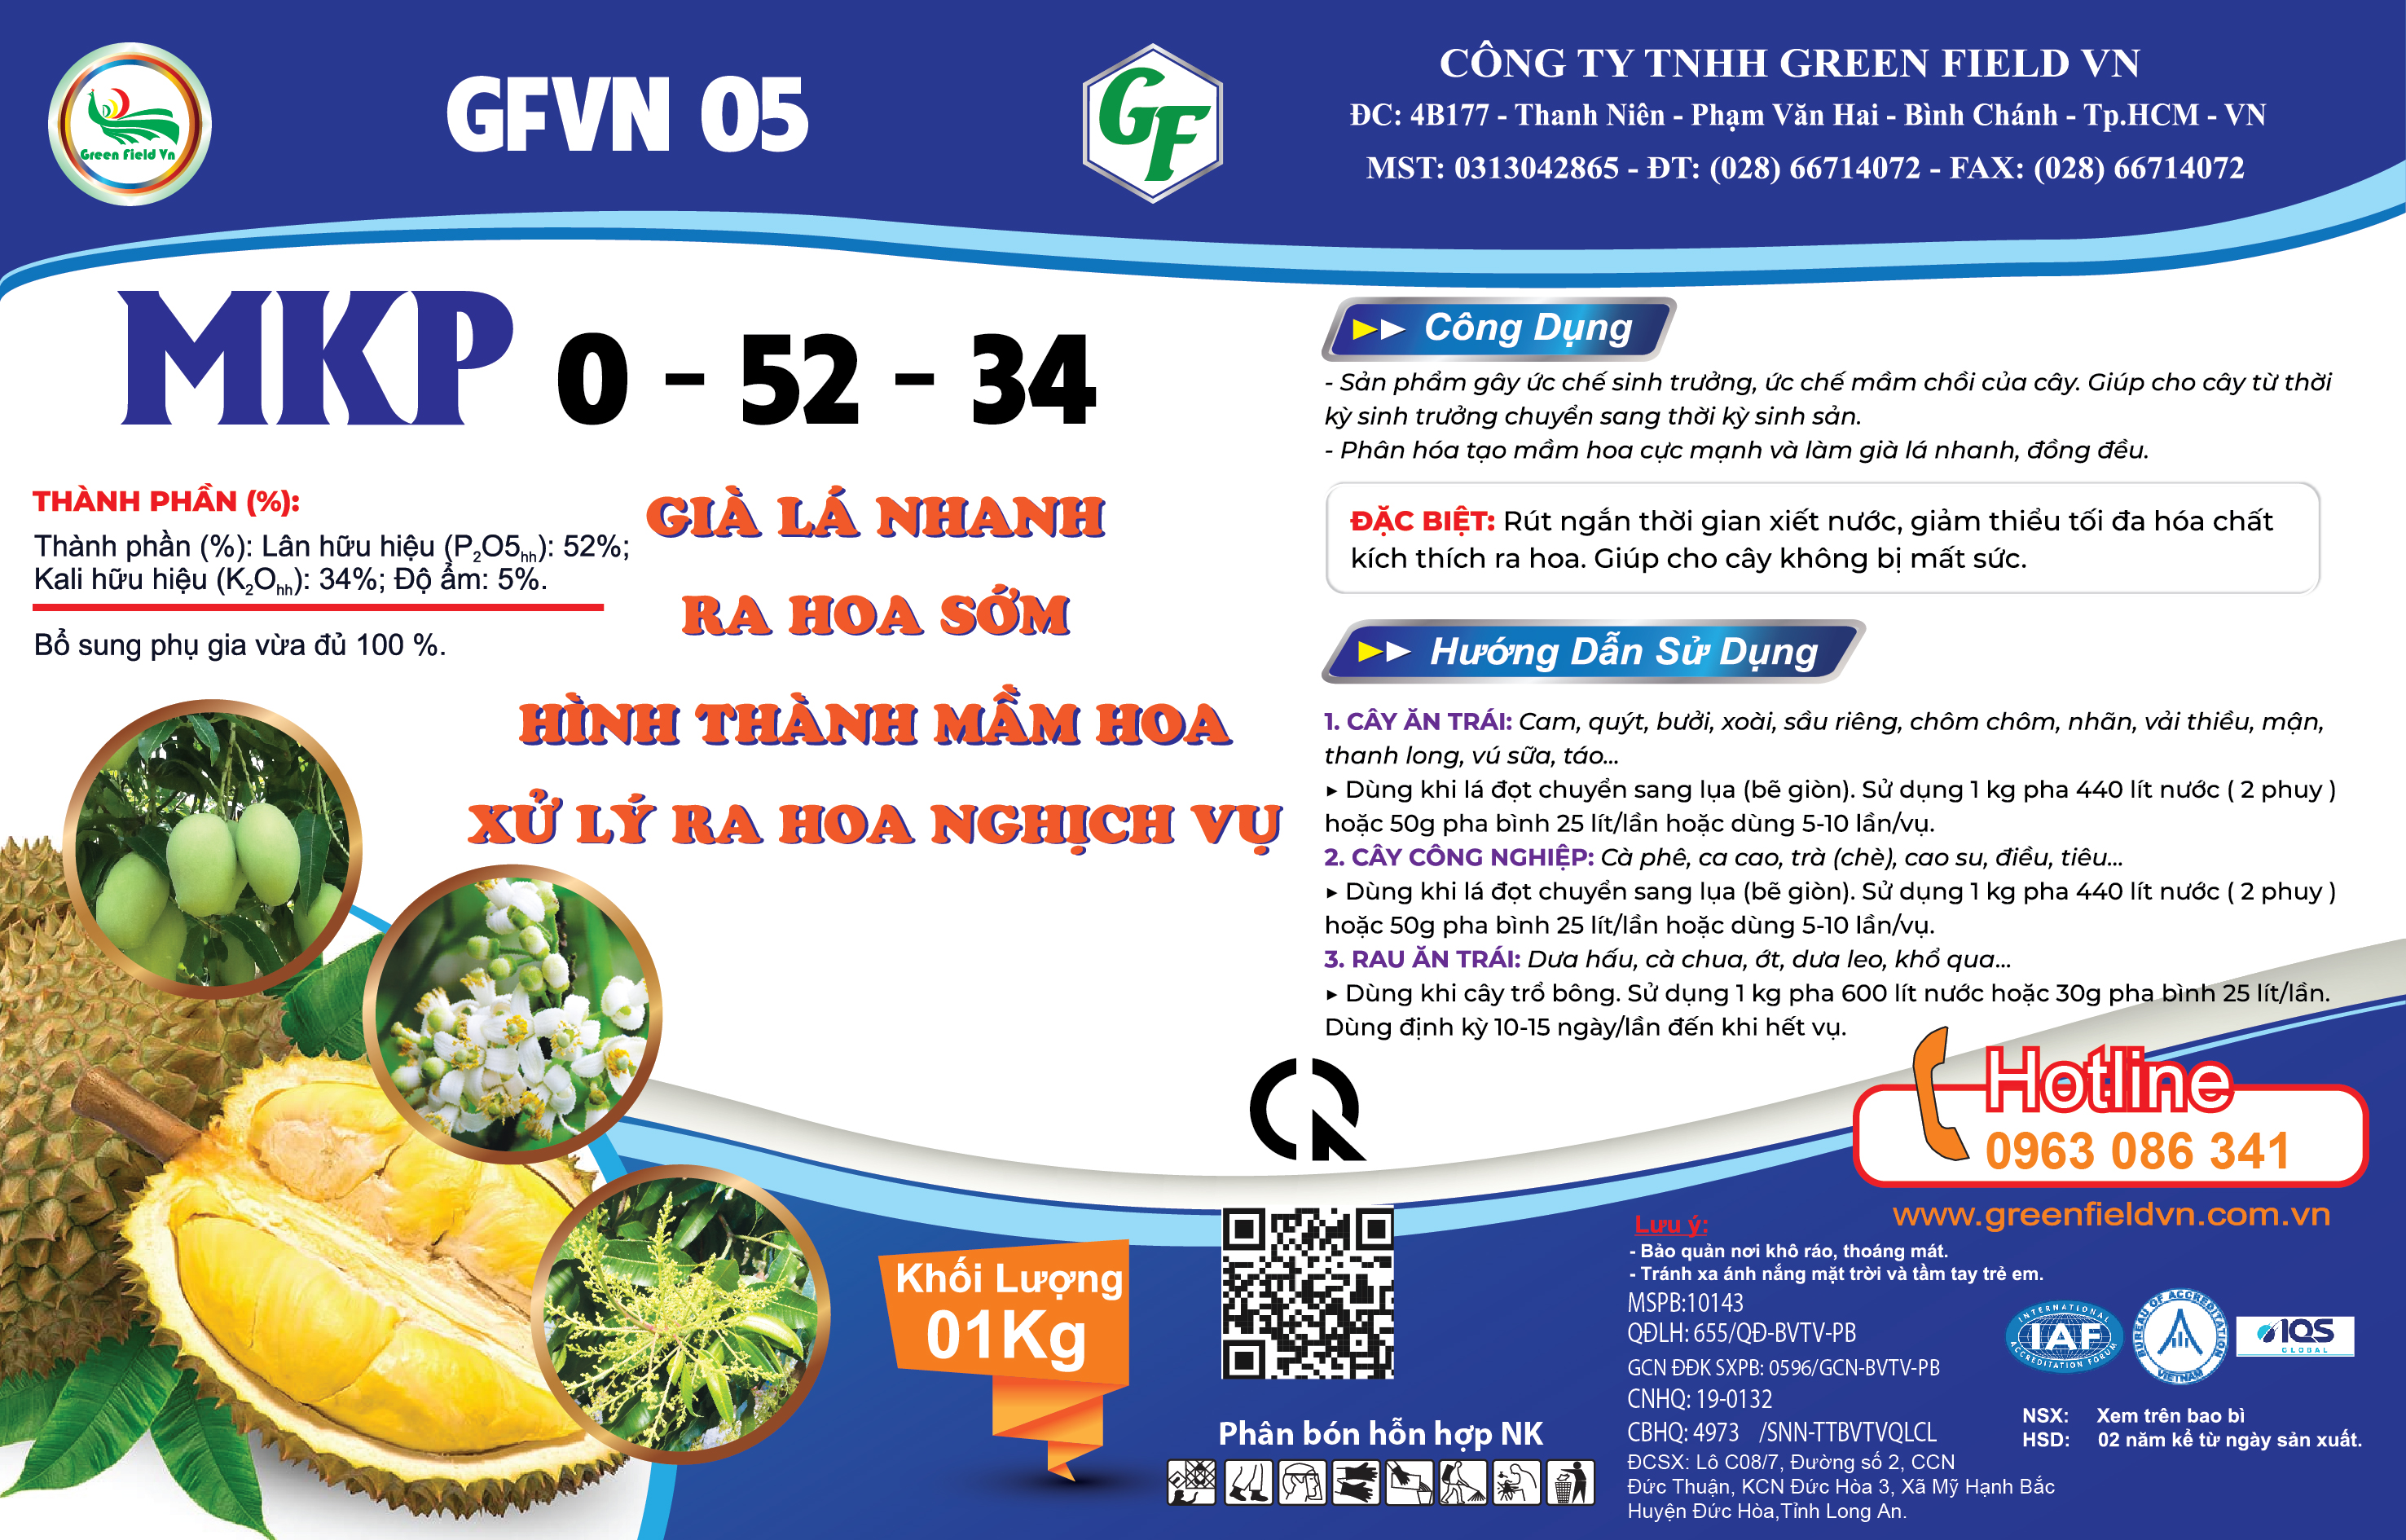 MKP 0 - 52 - 34 - GFVN 05